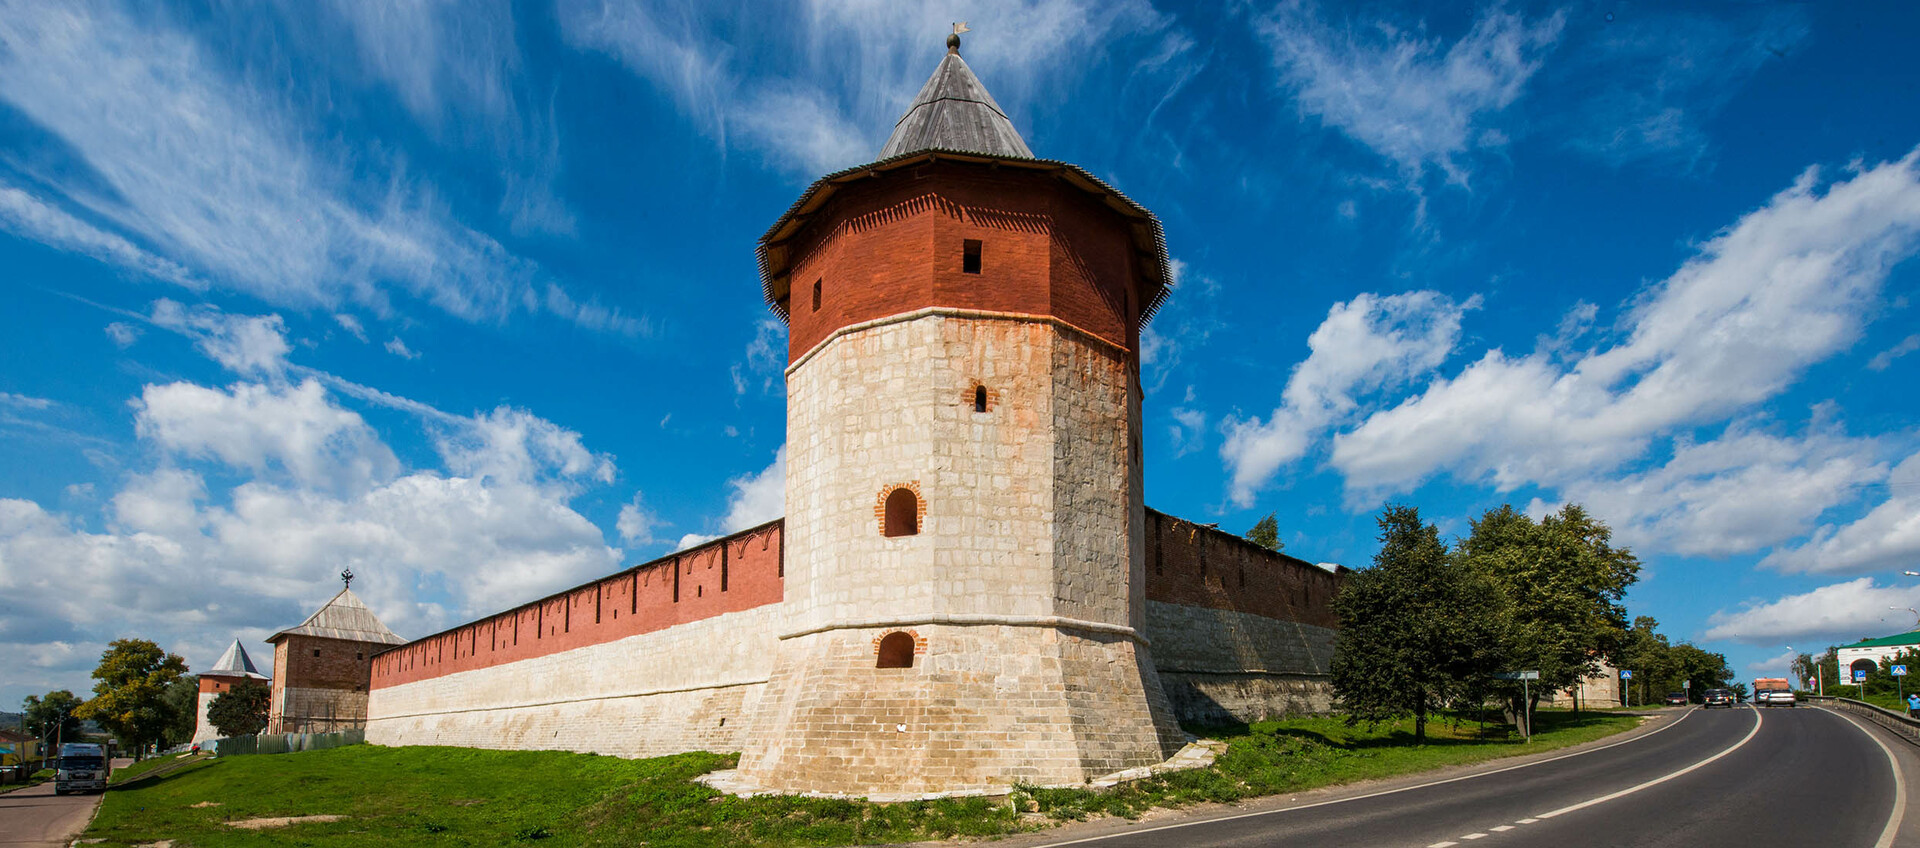 Кремли Подмосковья: девять древних крепостей, защищавших государство от врагов